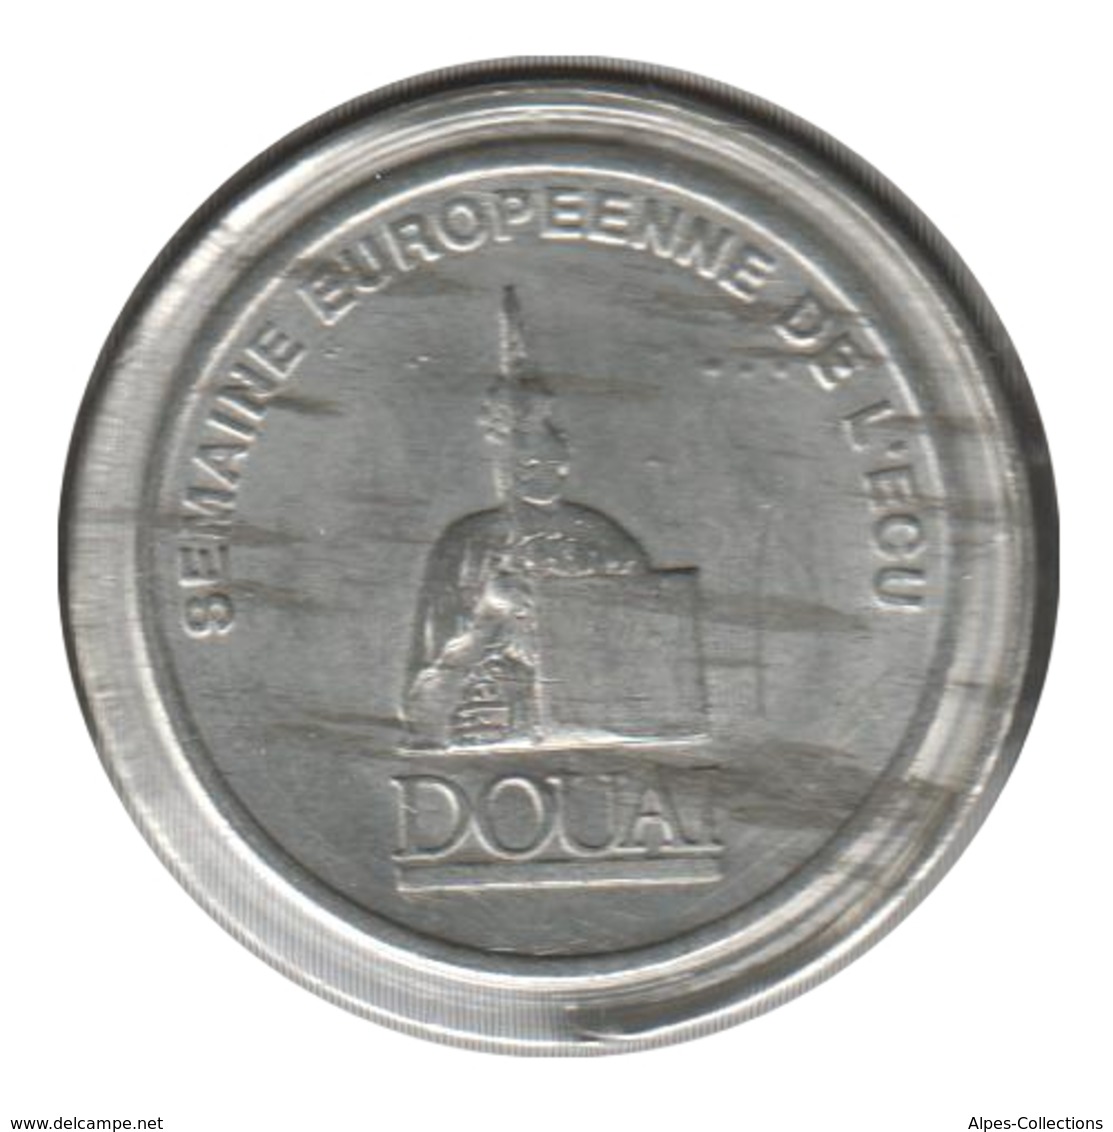 DOUAI - EC0010.3 - 1 ECU DES VILLES - Réf: NR - 1991 - Euros Of The Cities